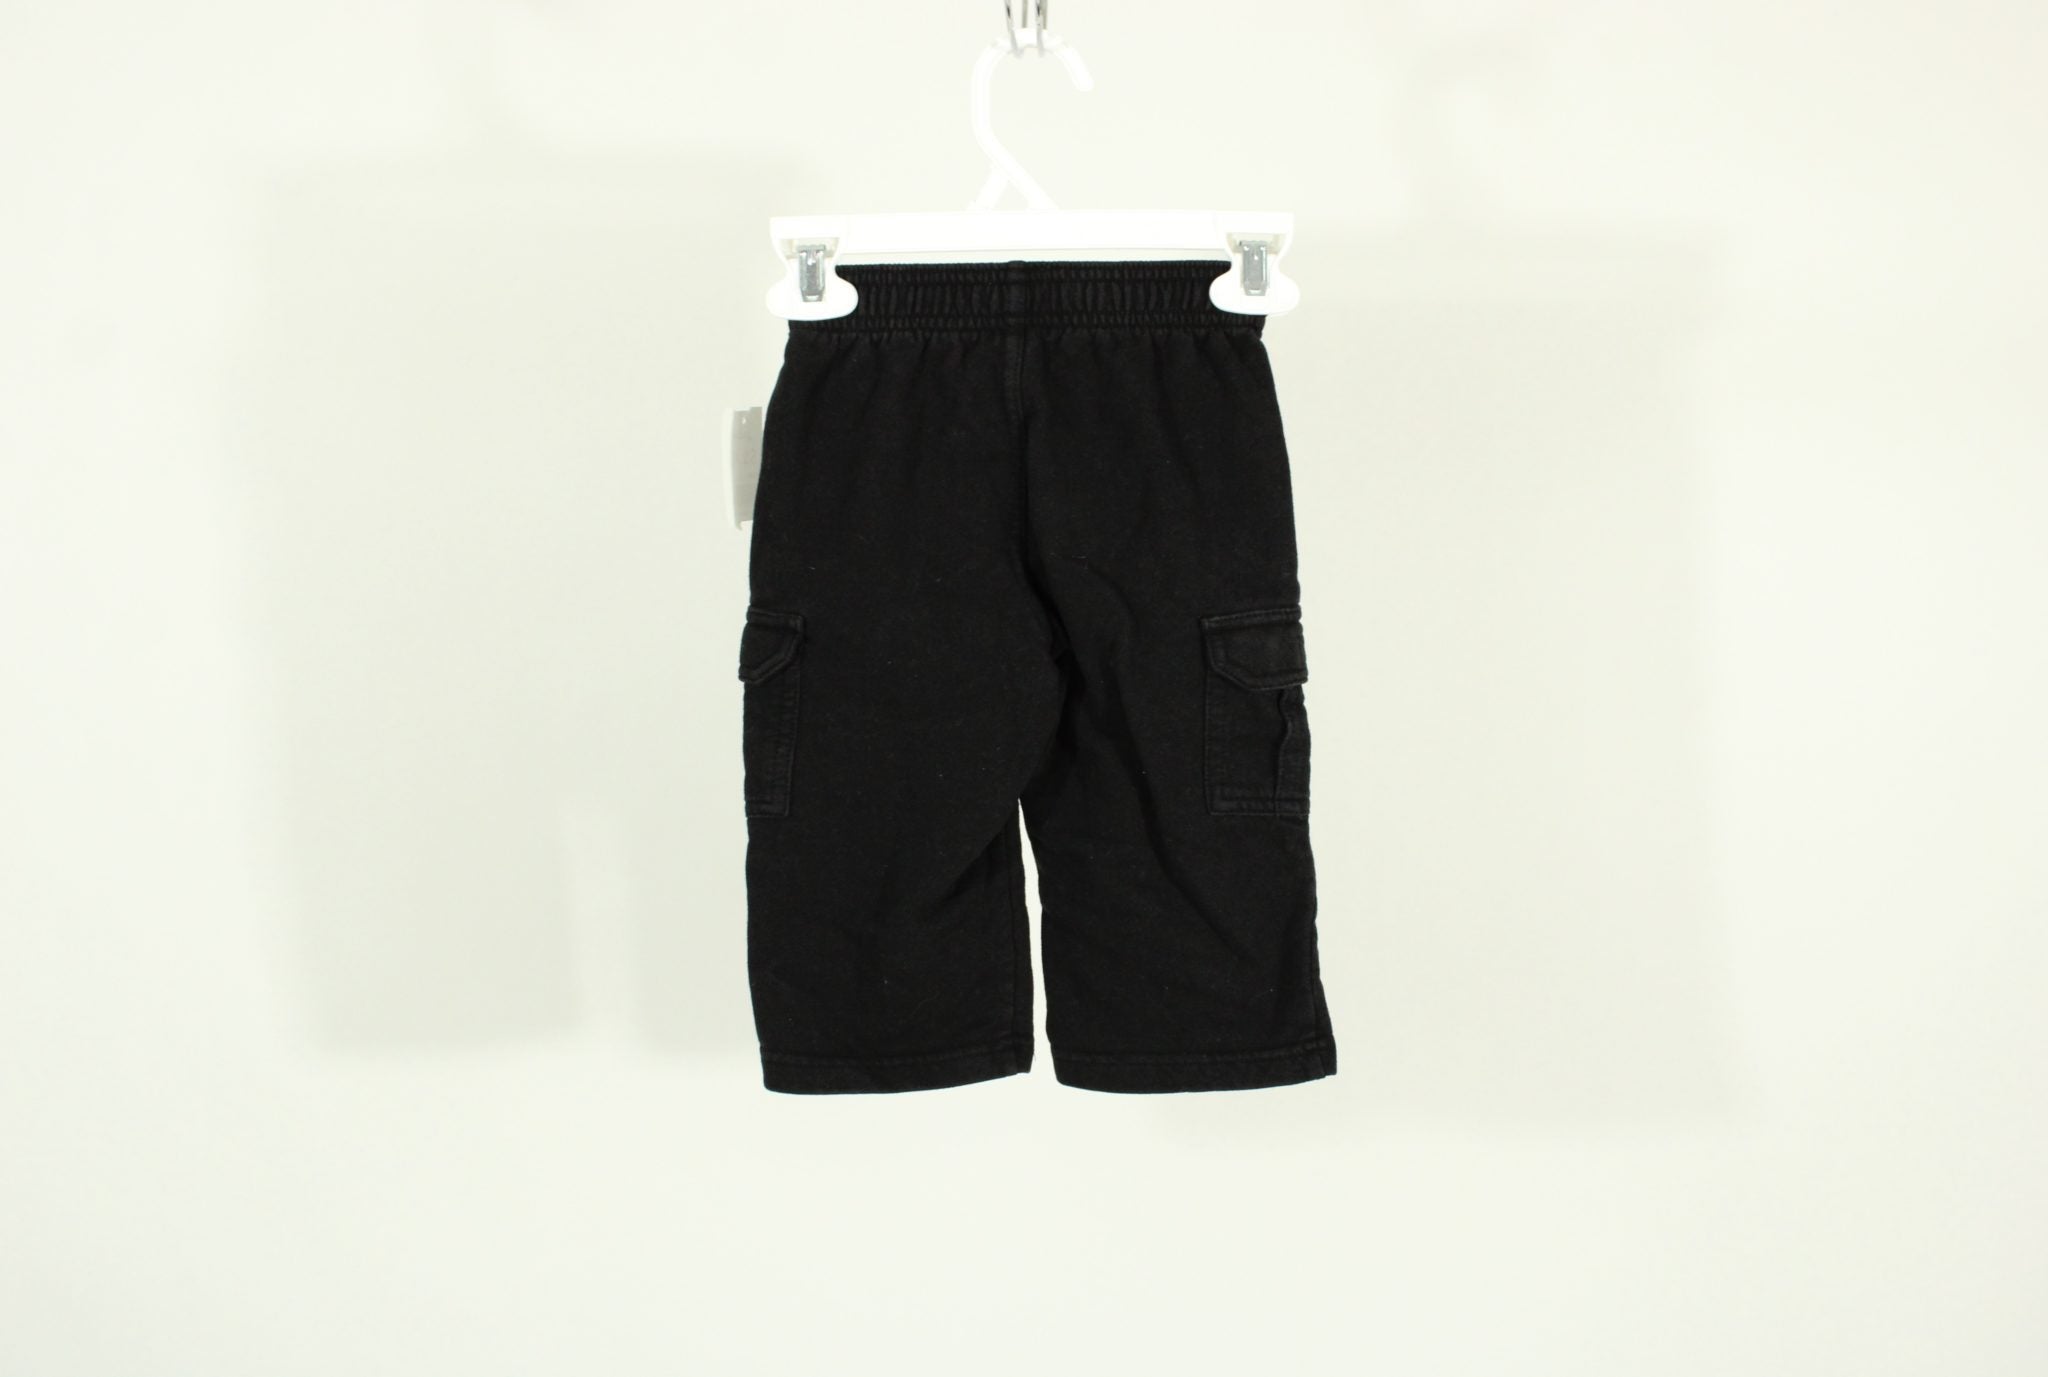 Toughskins Black Sweat Pants | Size 12 Months